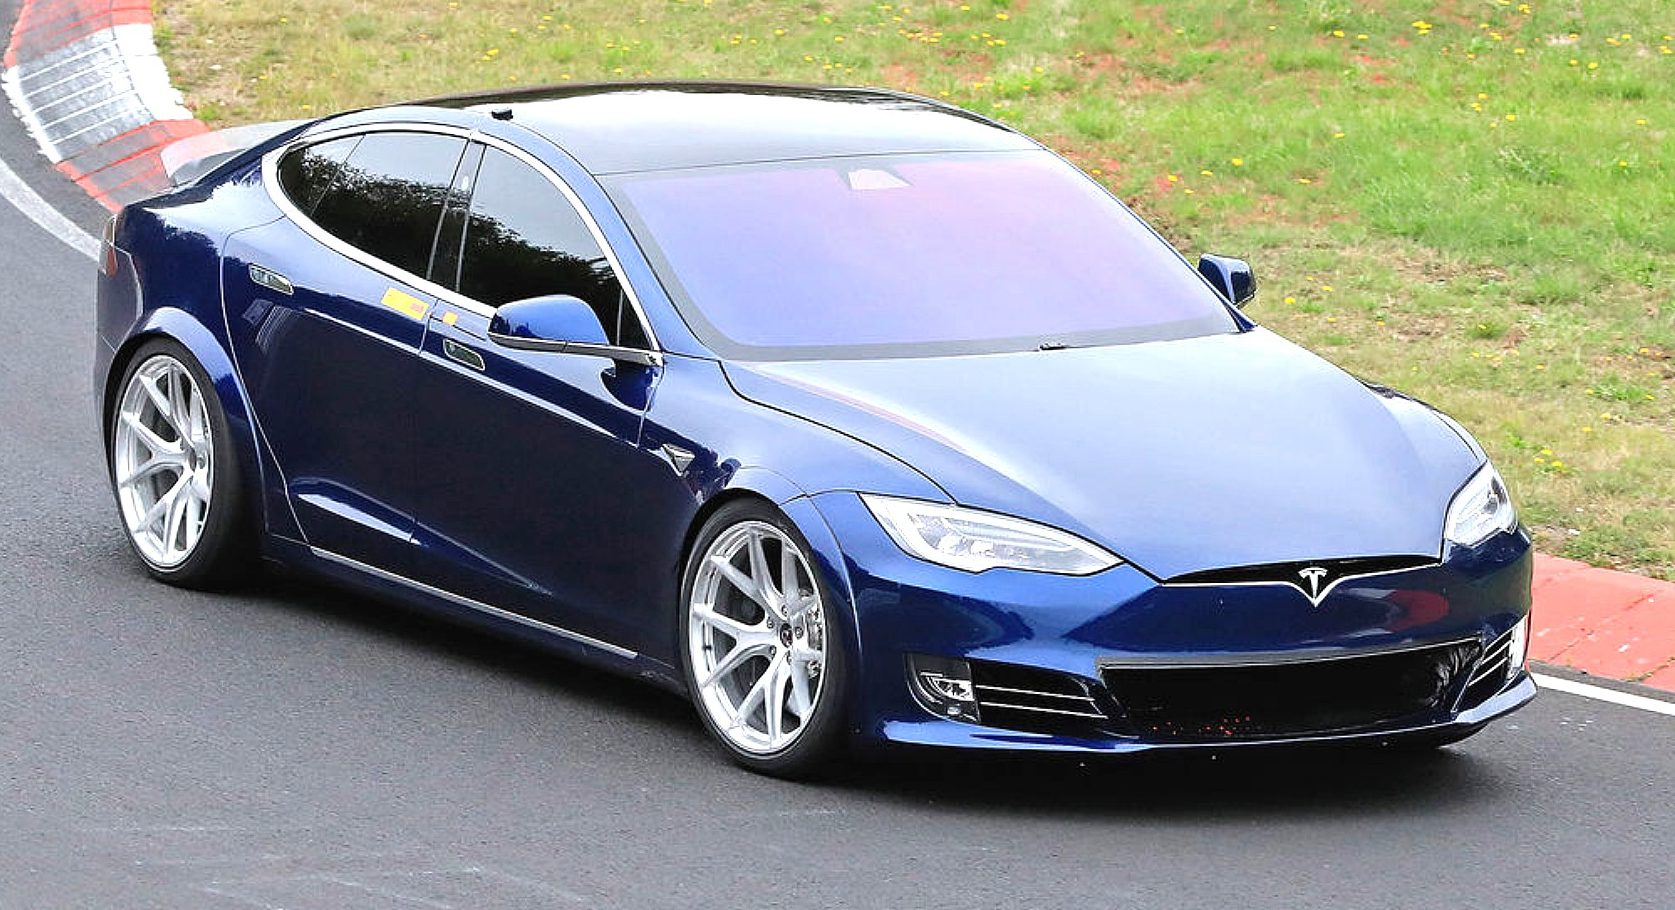 Tesla Model S Is Approaching A 400 Mile Range Says Elon Musk